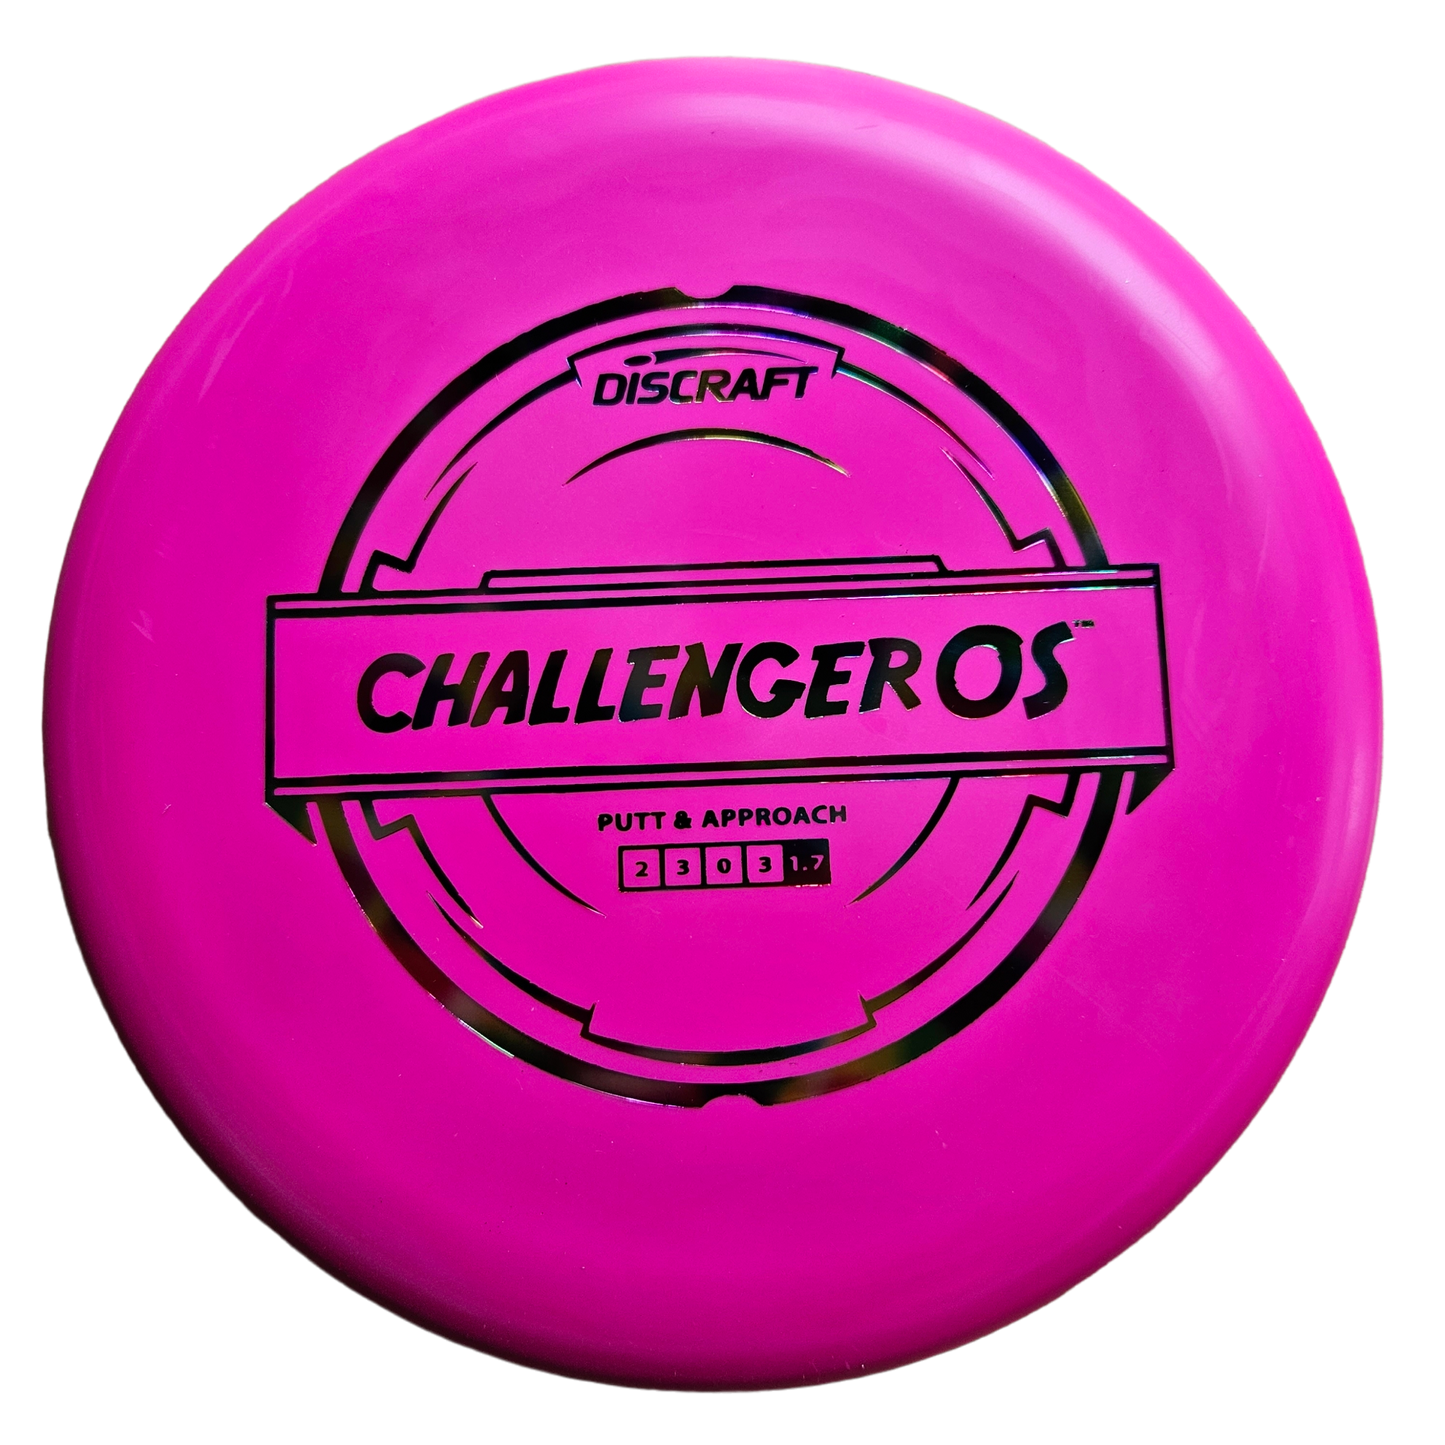 Discraft Challenger OS (Putter Line)